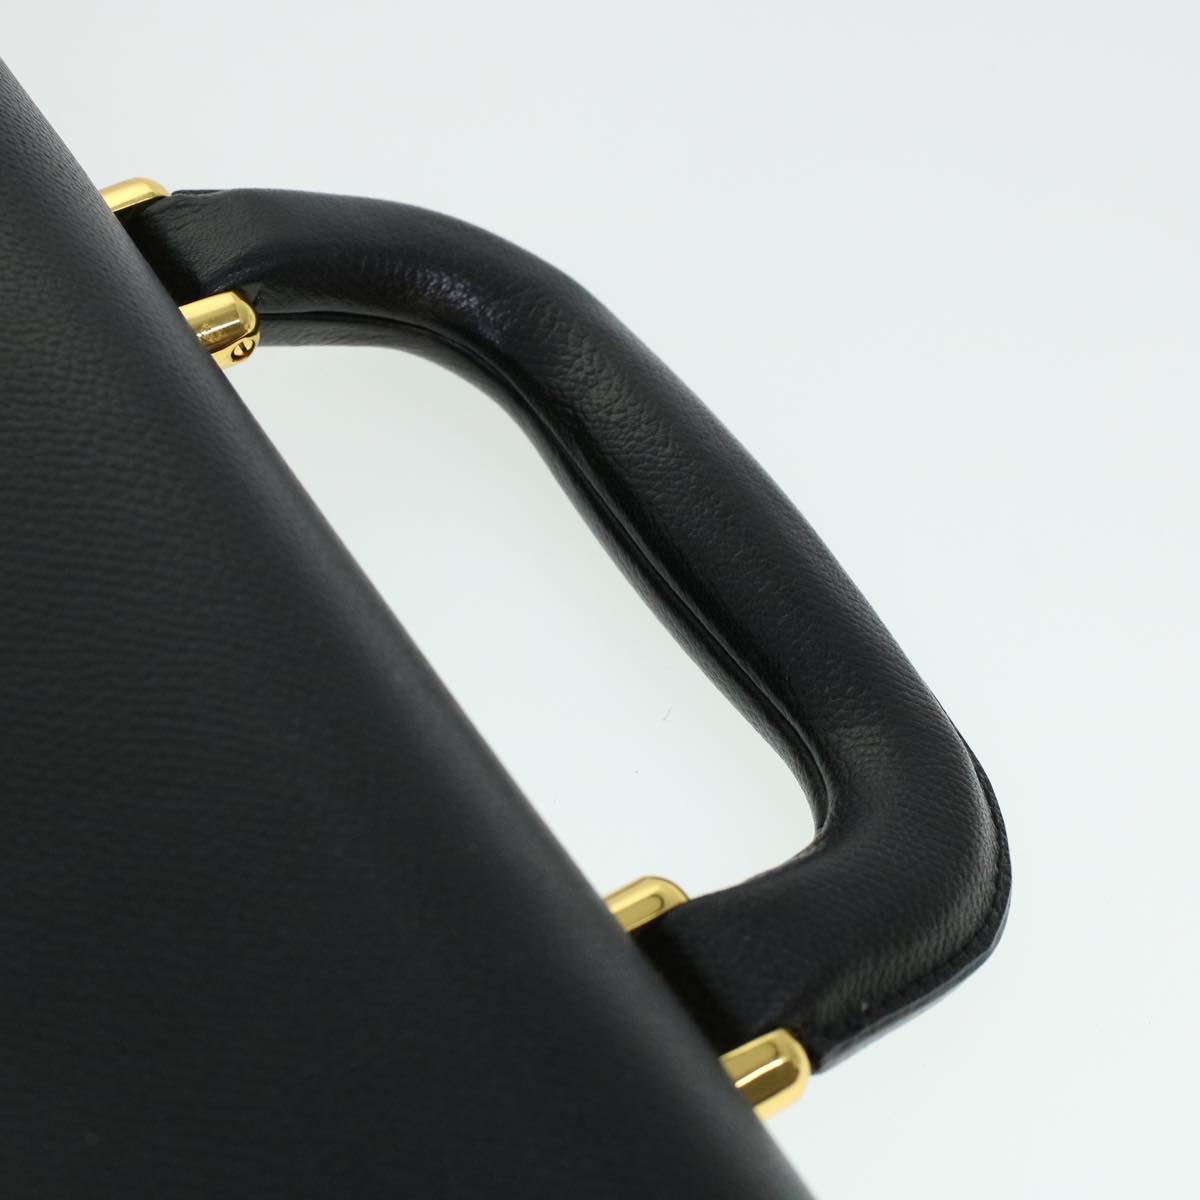 SAINT LAURENT Business Bag Leather Black Auth cl498